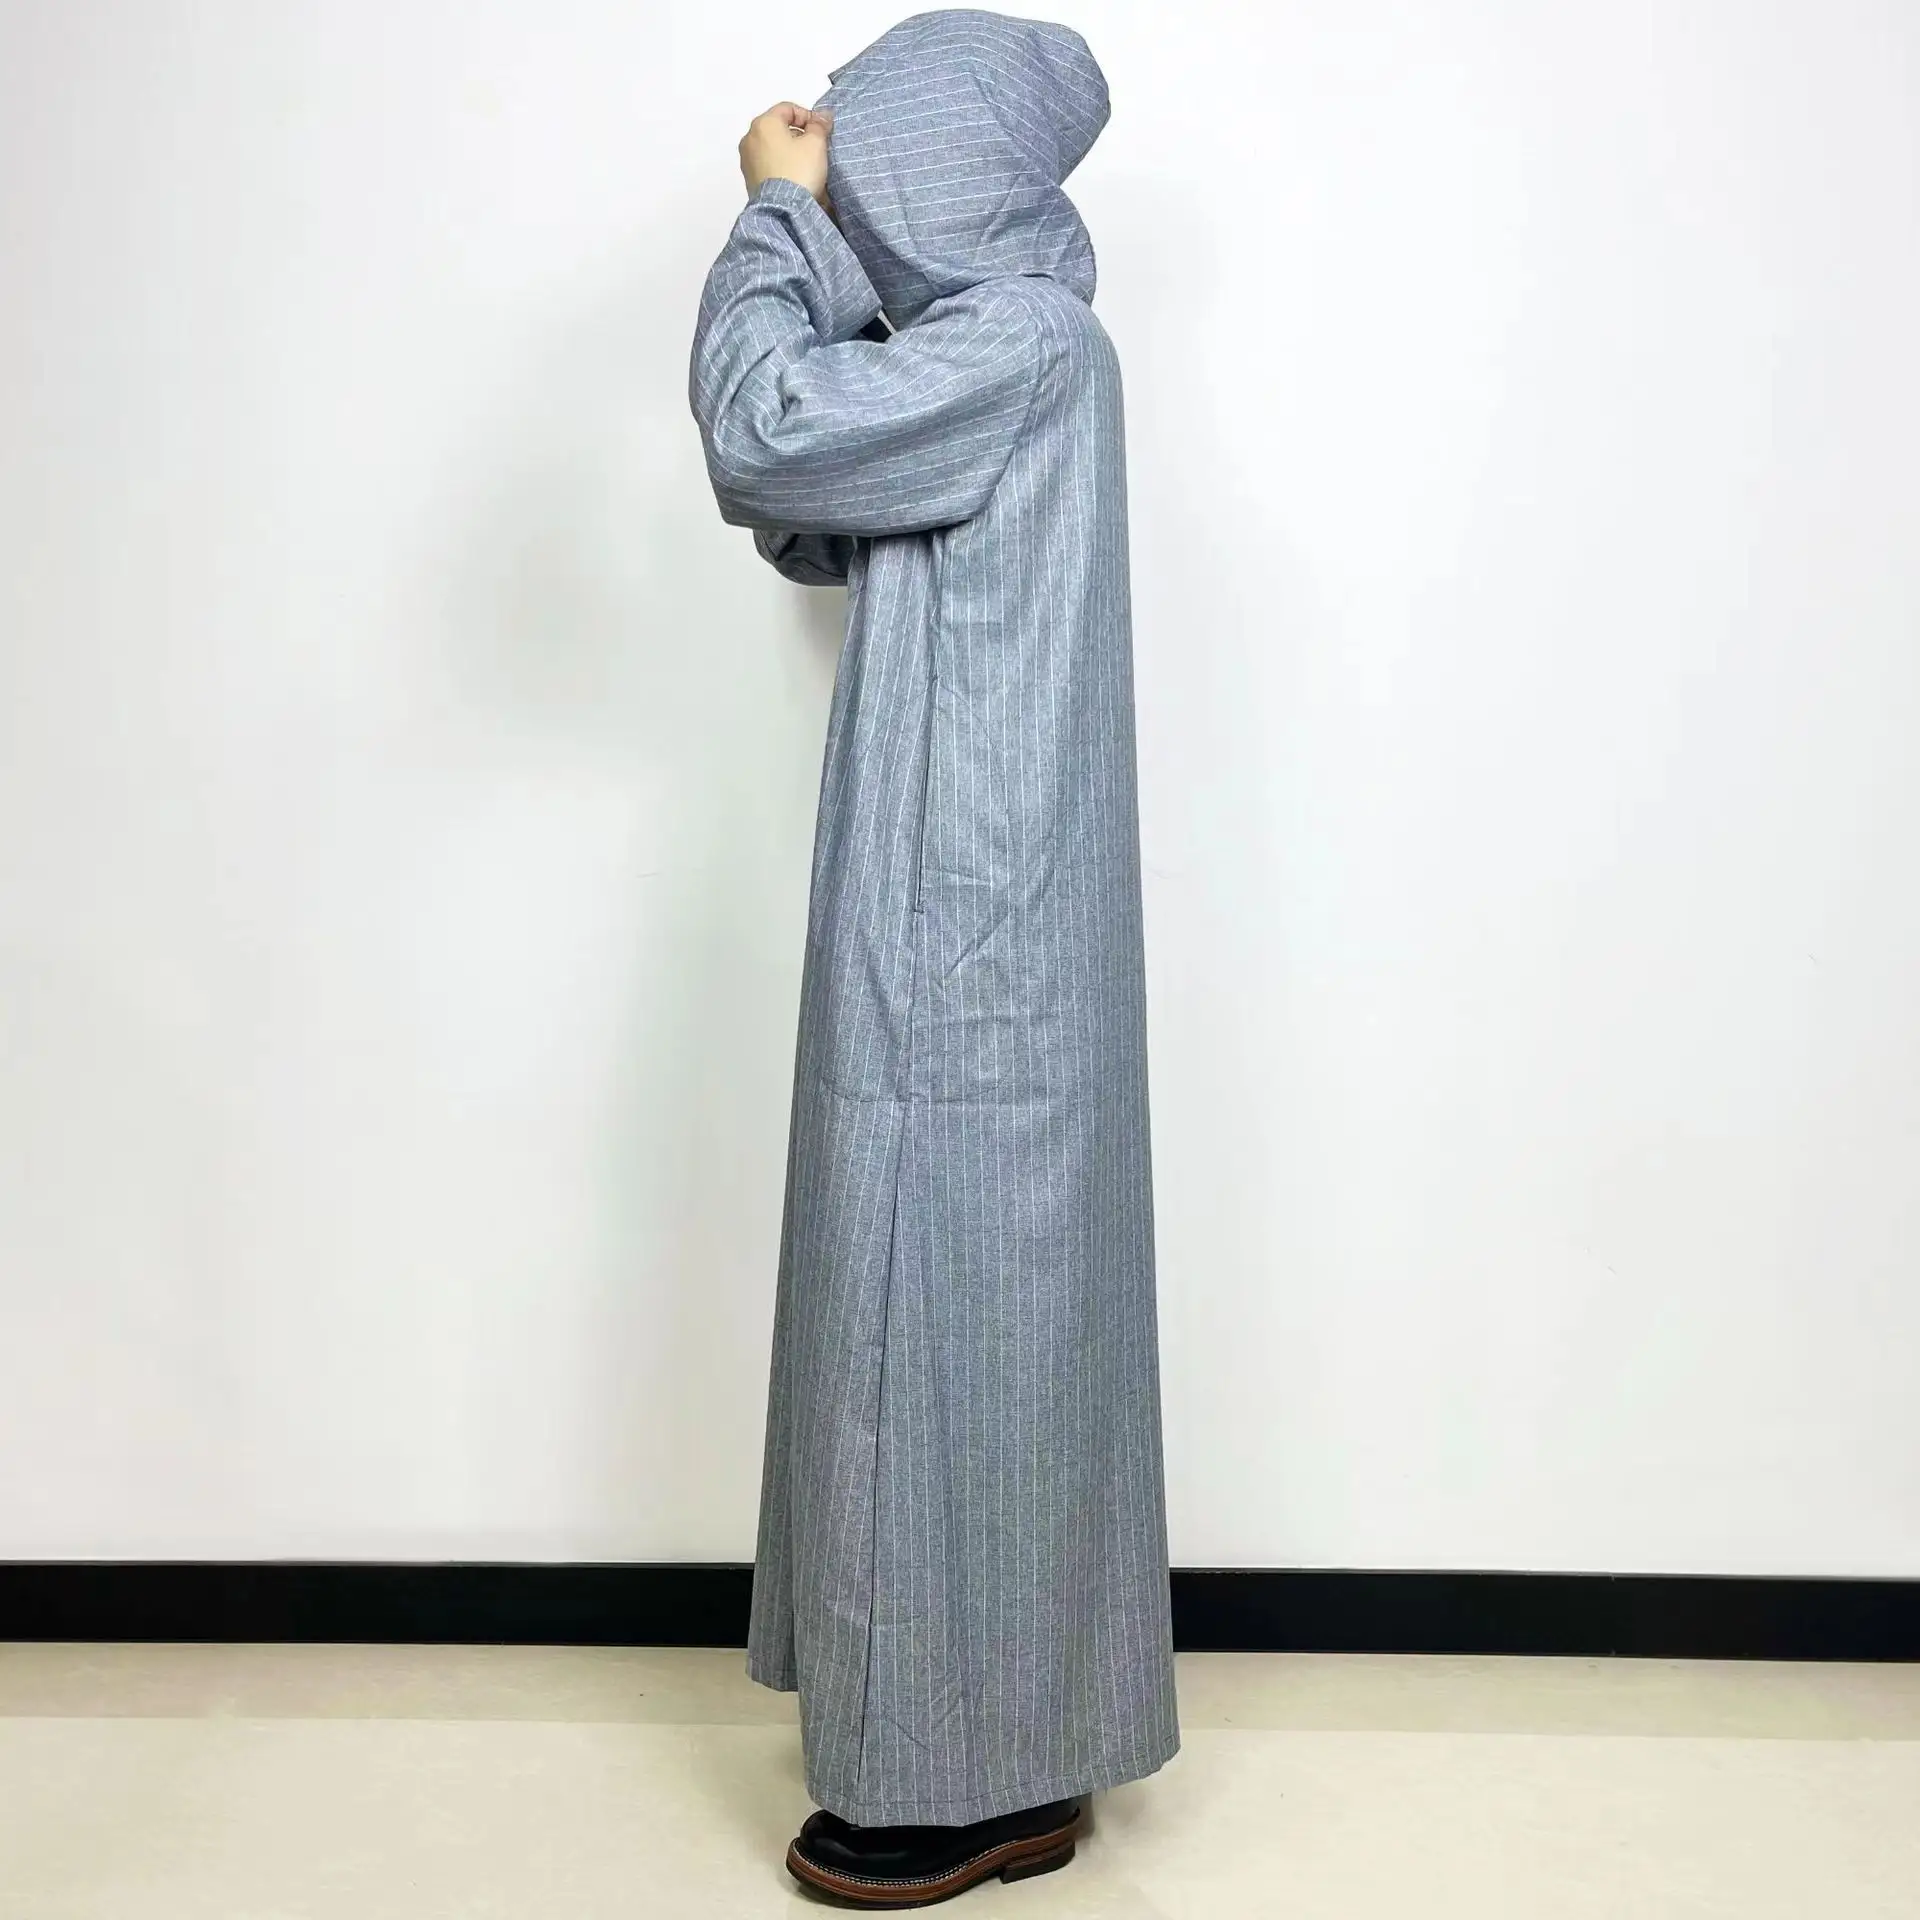 Vente chaude vêtements ethniques islamiques à capuche Jubbah Robe musulmane à manches longues Robe marocaine al aseel Thobe hommes